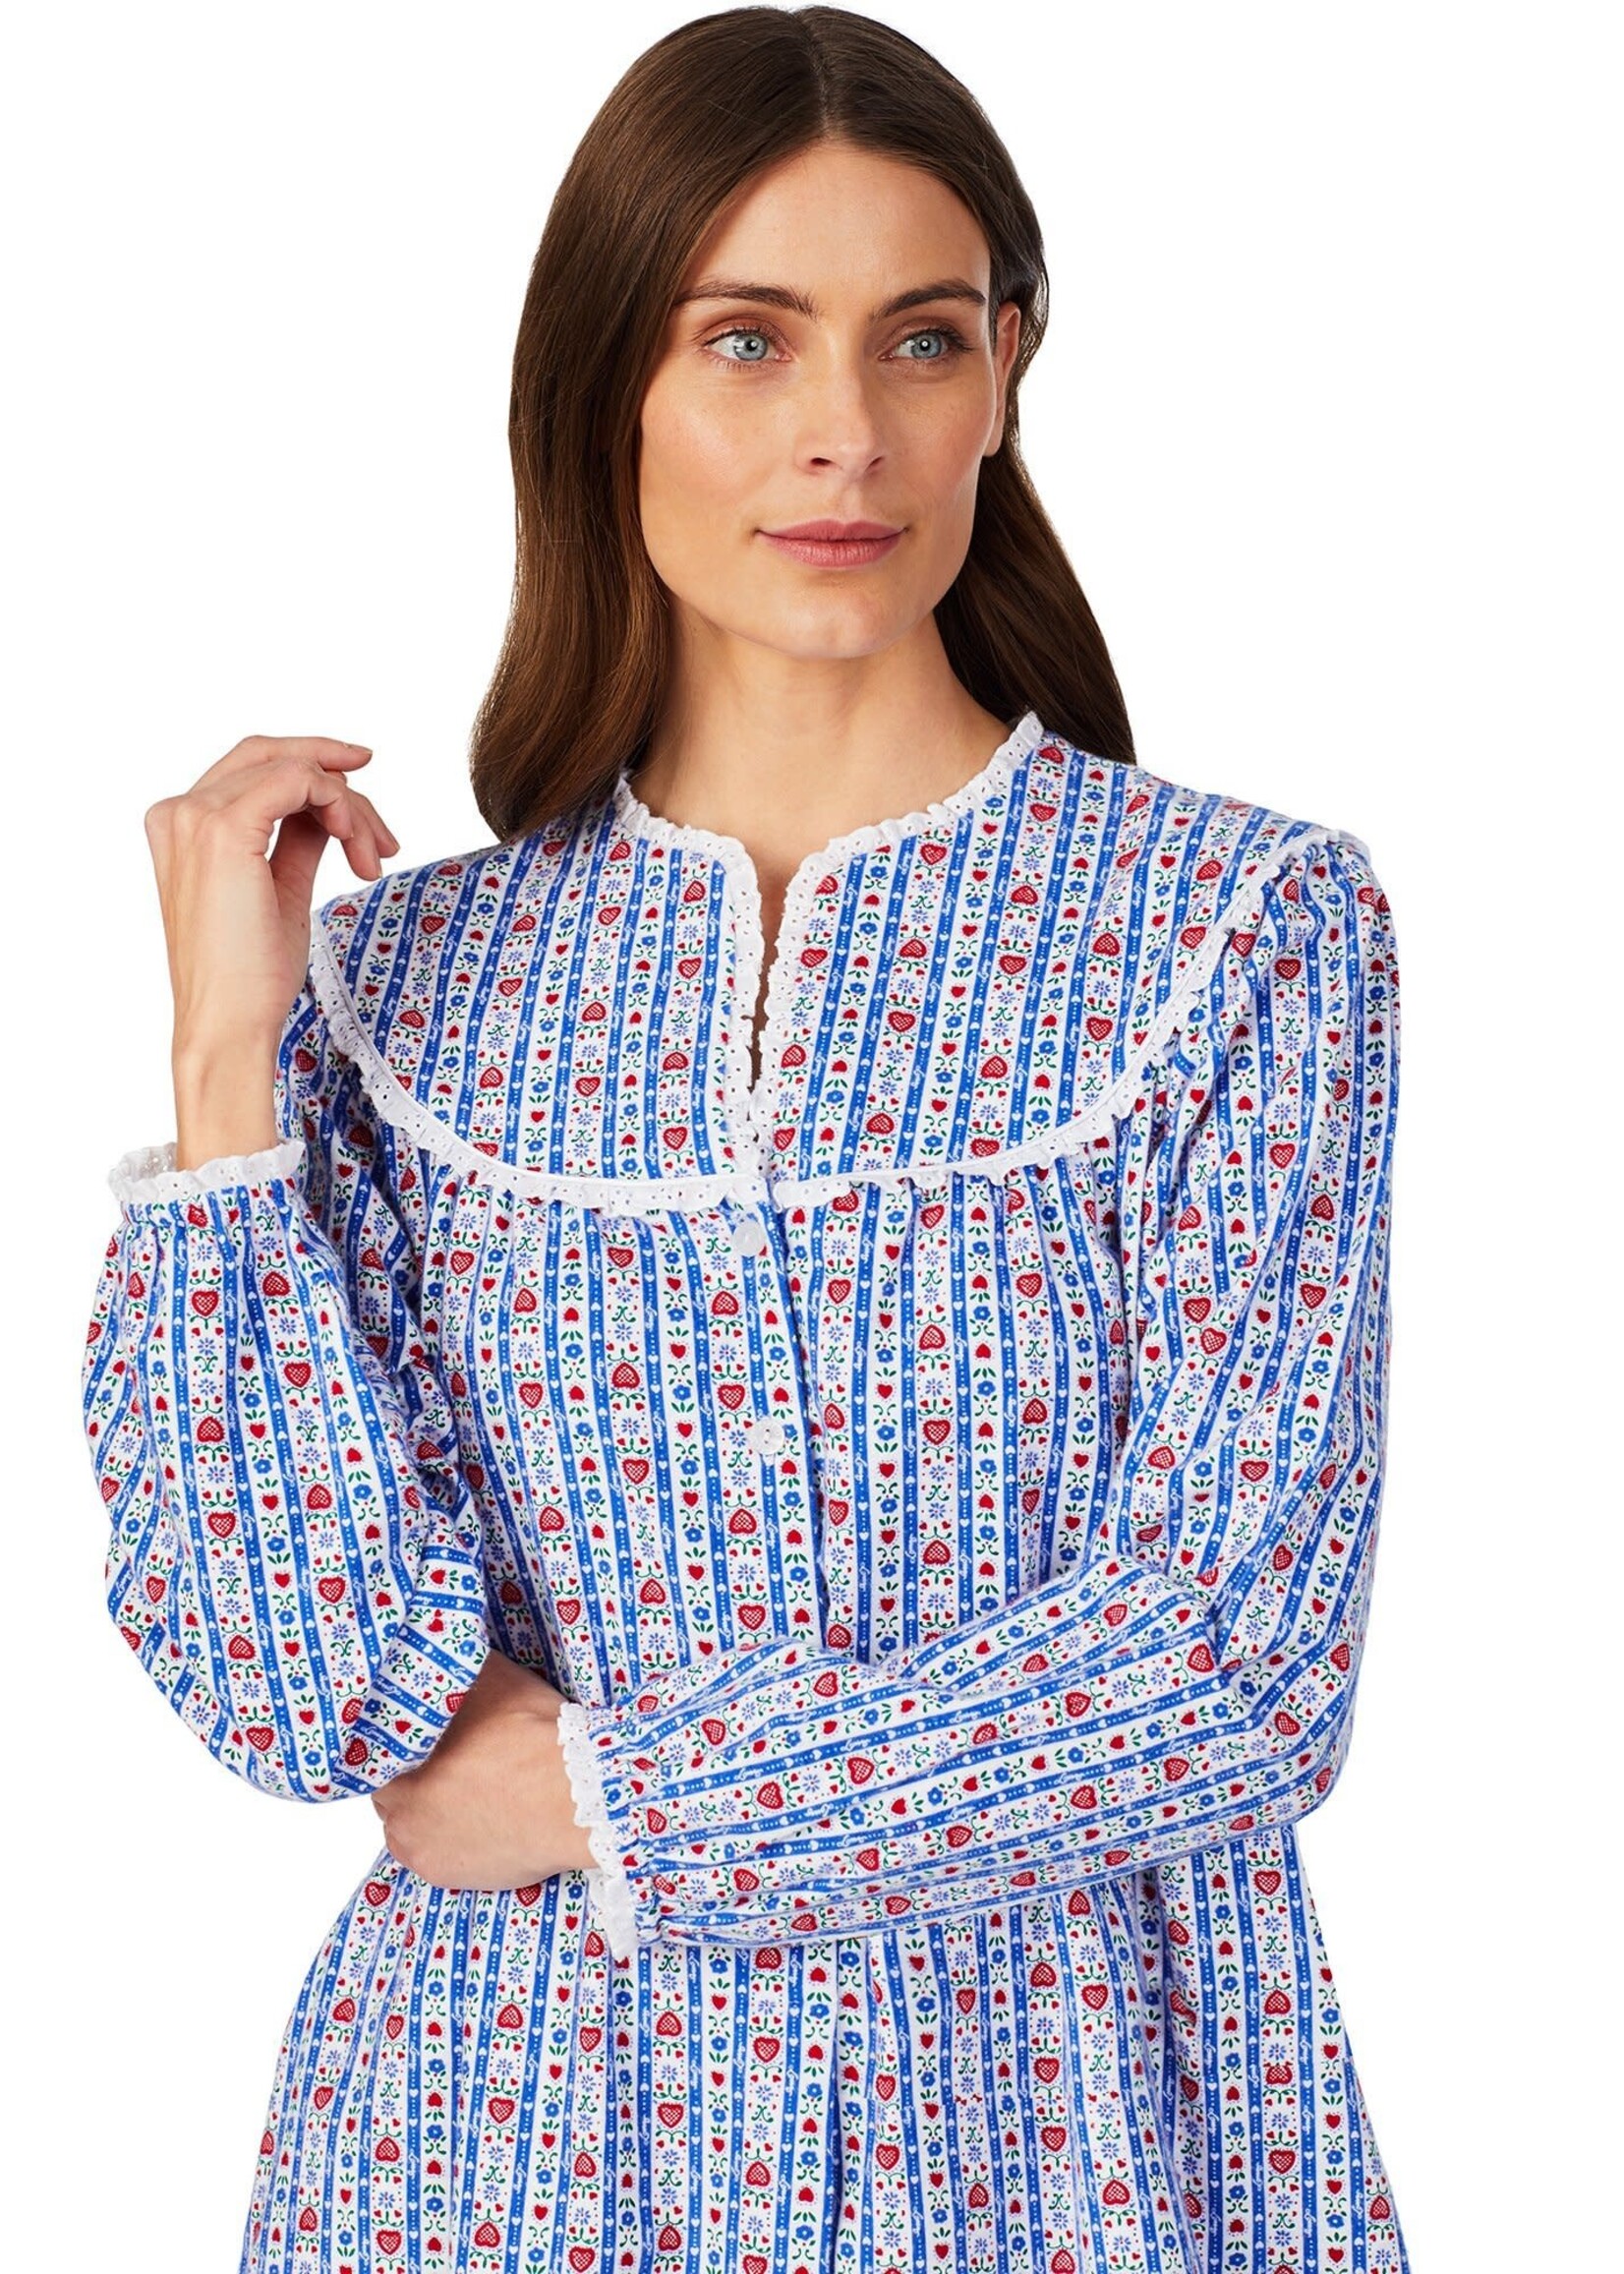 Lanz of Salzburg Lanz Women's Tyrolean Flannel Nightgown